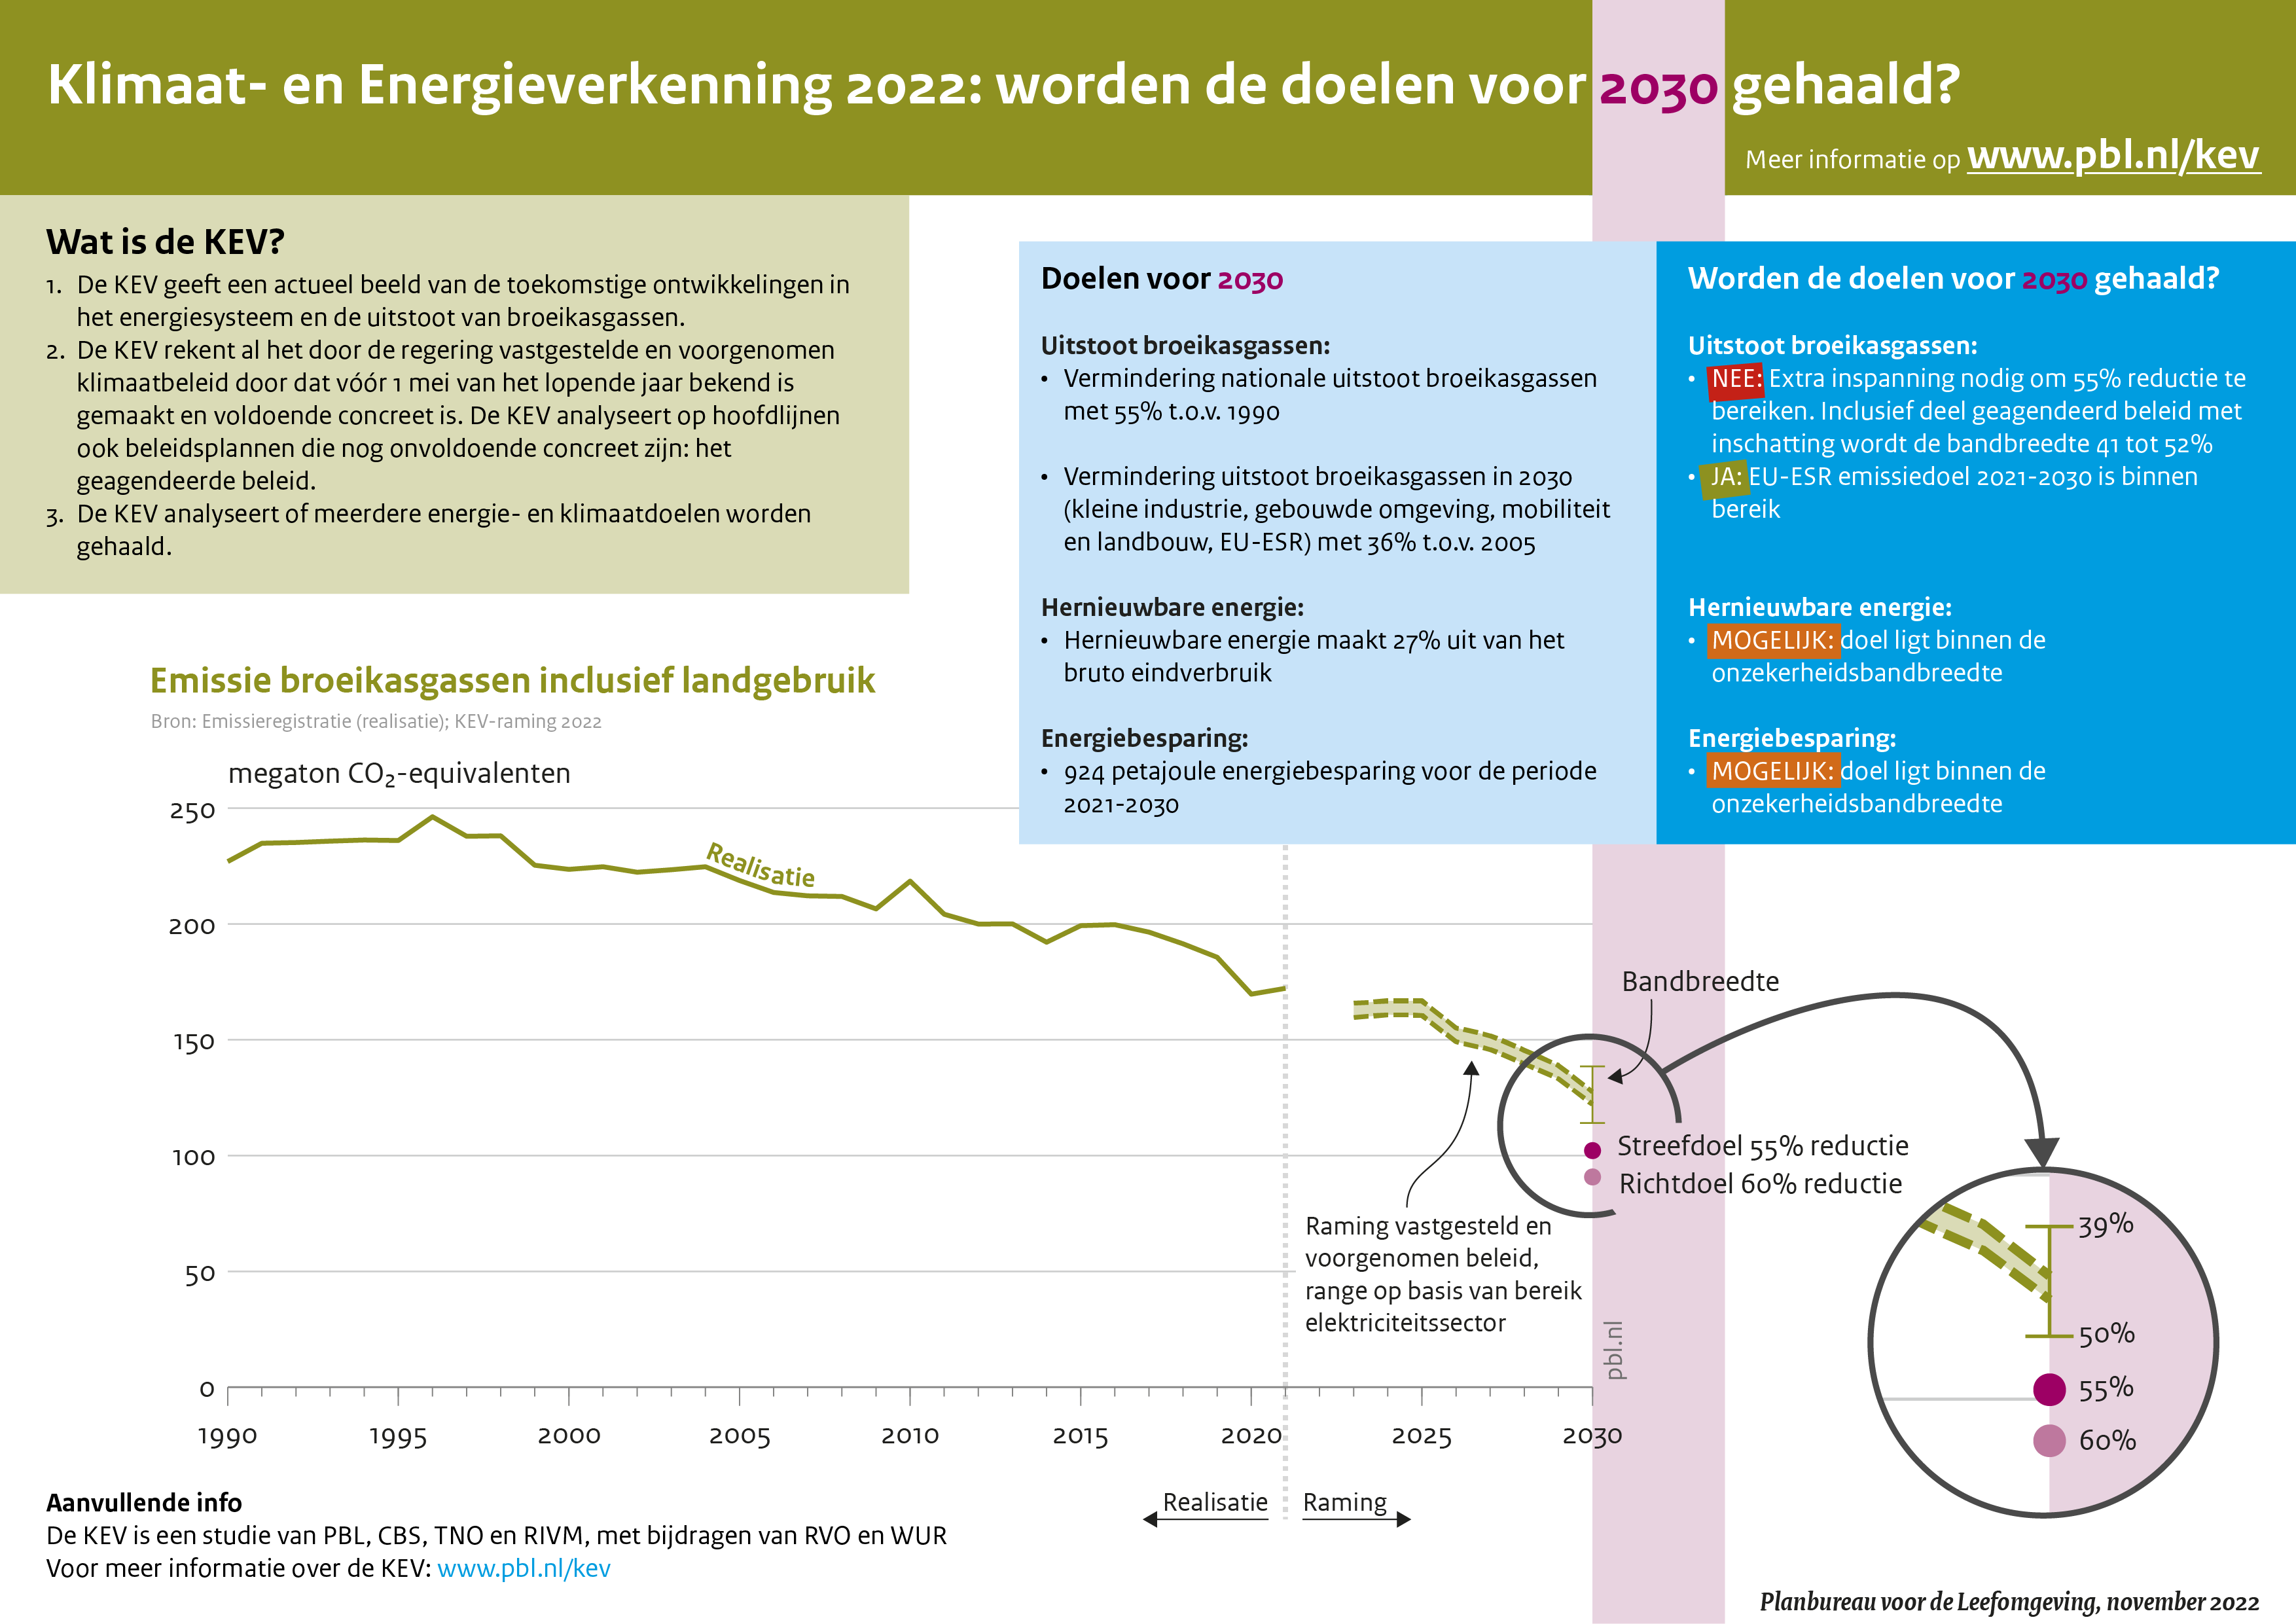 De KEV 2022 geeft een geactualiseerd beeld van de Nederlandse energiehuishouding en verkent toekomstige ontwikkelingen in het energiesysteem en de uitstoot van broeikasgassen. Op basis van concreet uitgewerkt (vastgesteld en voorgenomen) beleid is in 2030 de geraamde emissie 39 tot 50 procent lager dan in 1990. Vanwege onzekerheden zit hier een bandbreedte in. Daarmee moet nog een afstand van 5 tot 16 procentpunt (ofwel 12 tot 36 megaton) overbrugd worden tot het doel van 55 procent emissiereductie in 2030.